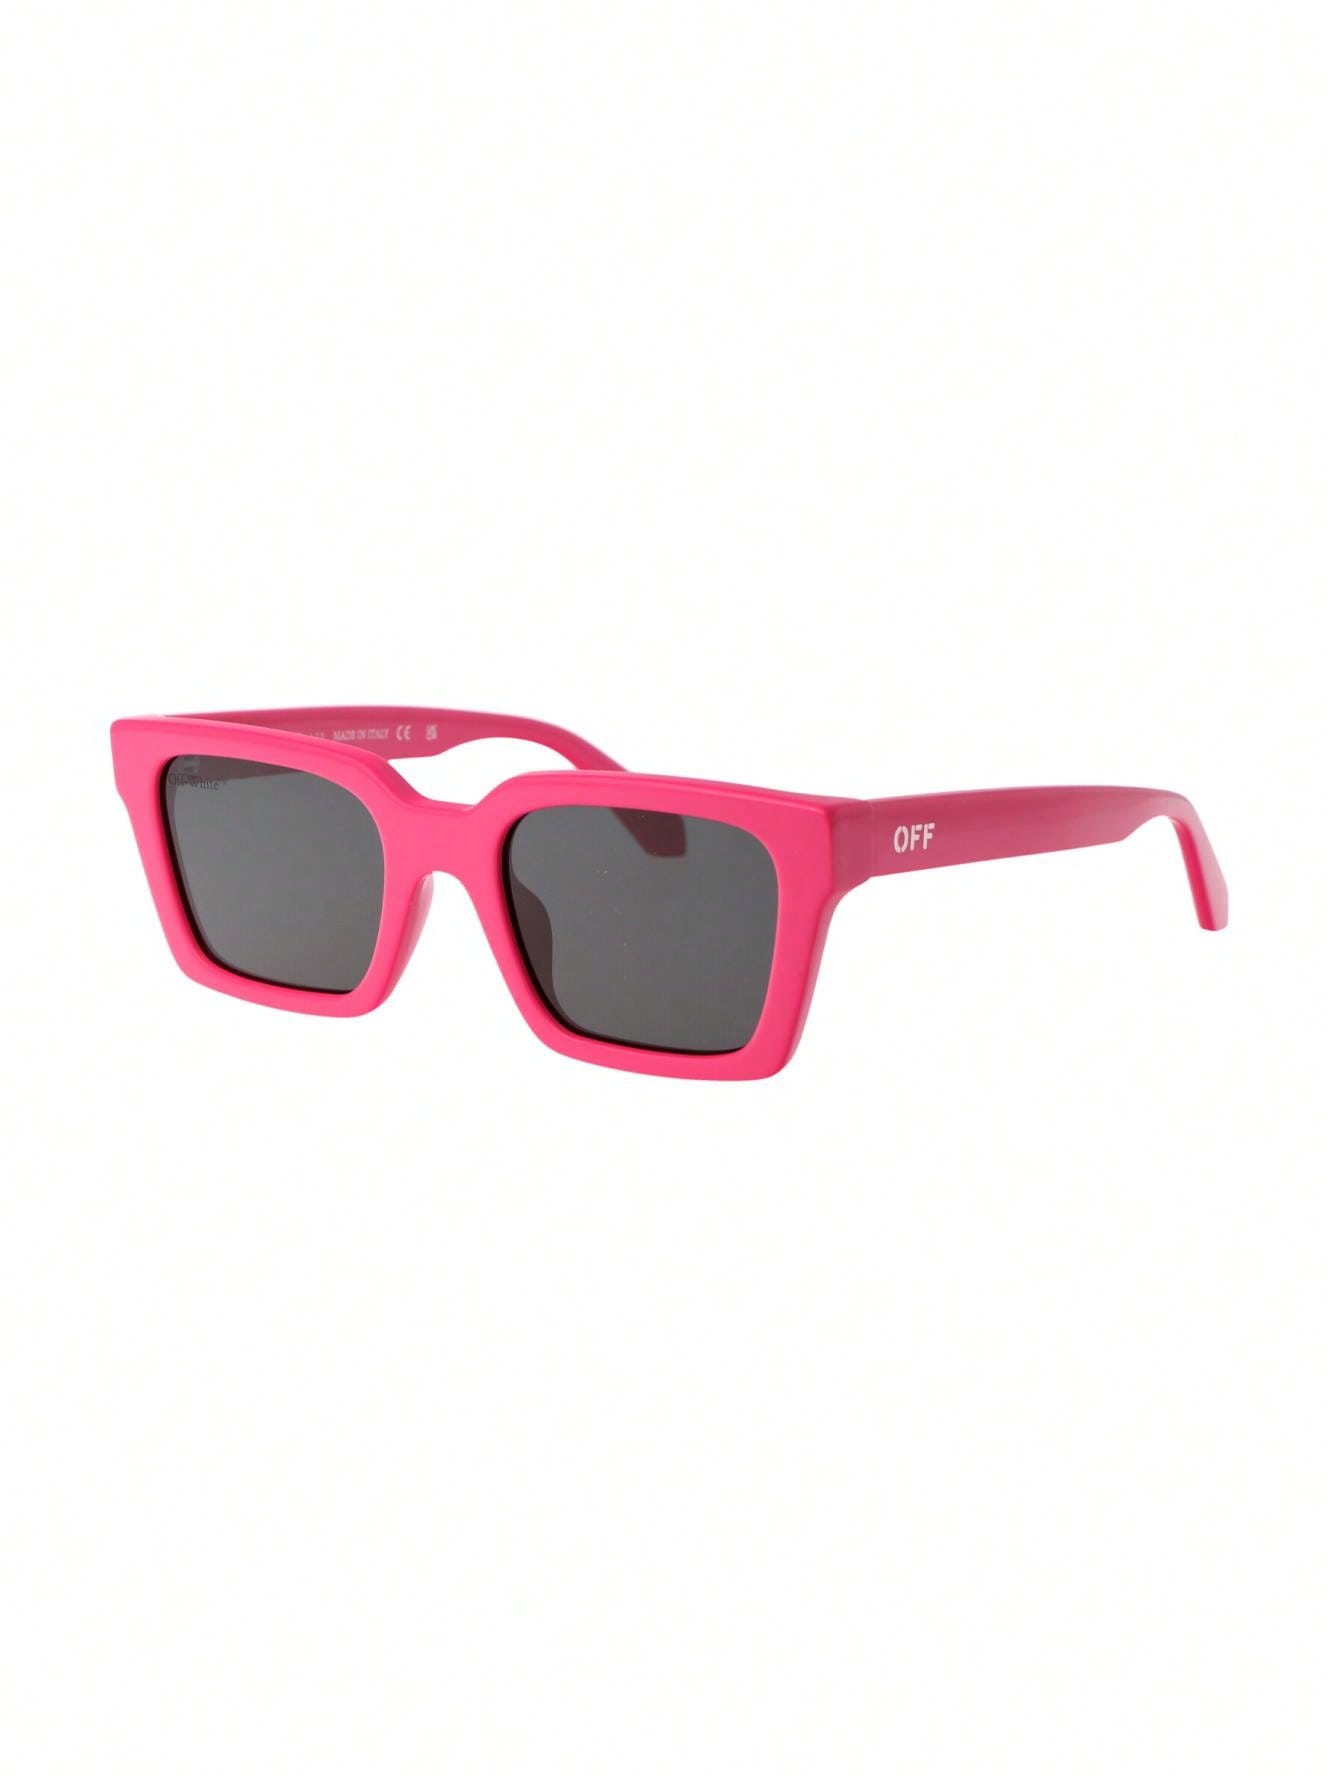 черные солнцезащитные очки prescott off white Мужские солнцезащитные очки Off-White РОЗОВЫЕ OERI086F23PLA0013207, розовый